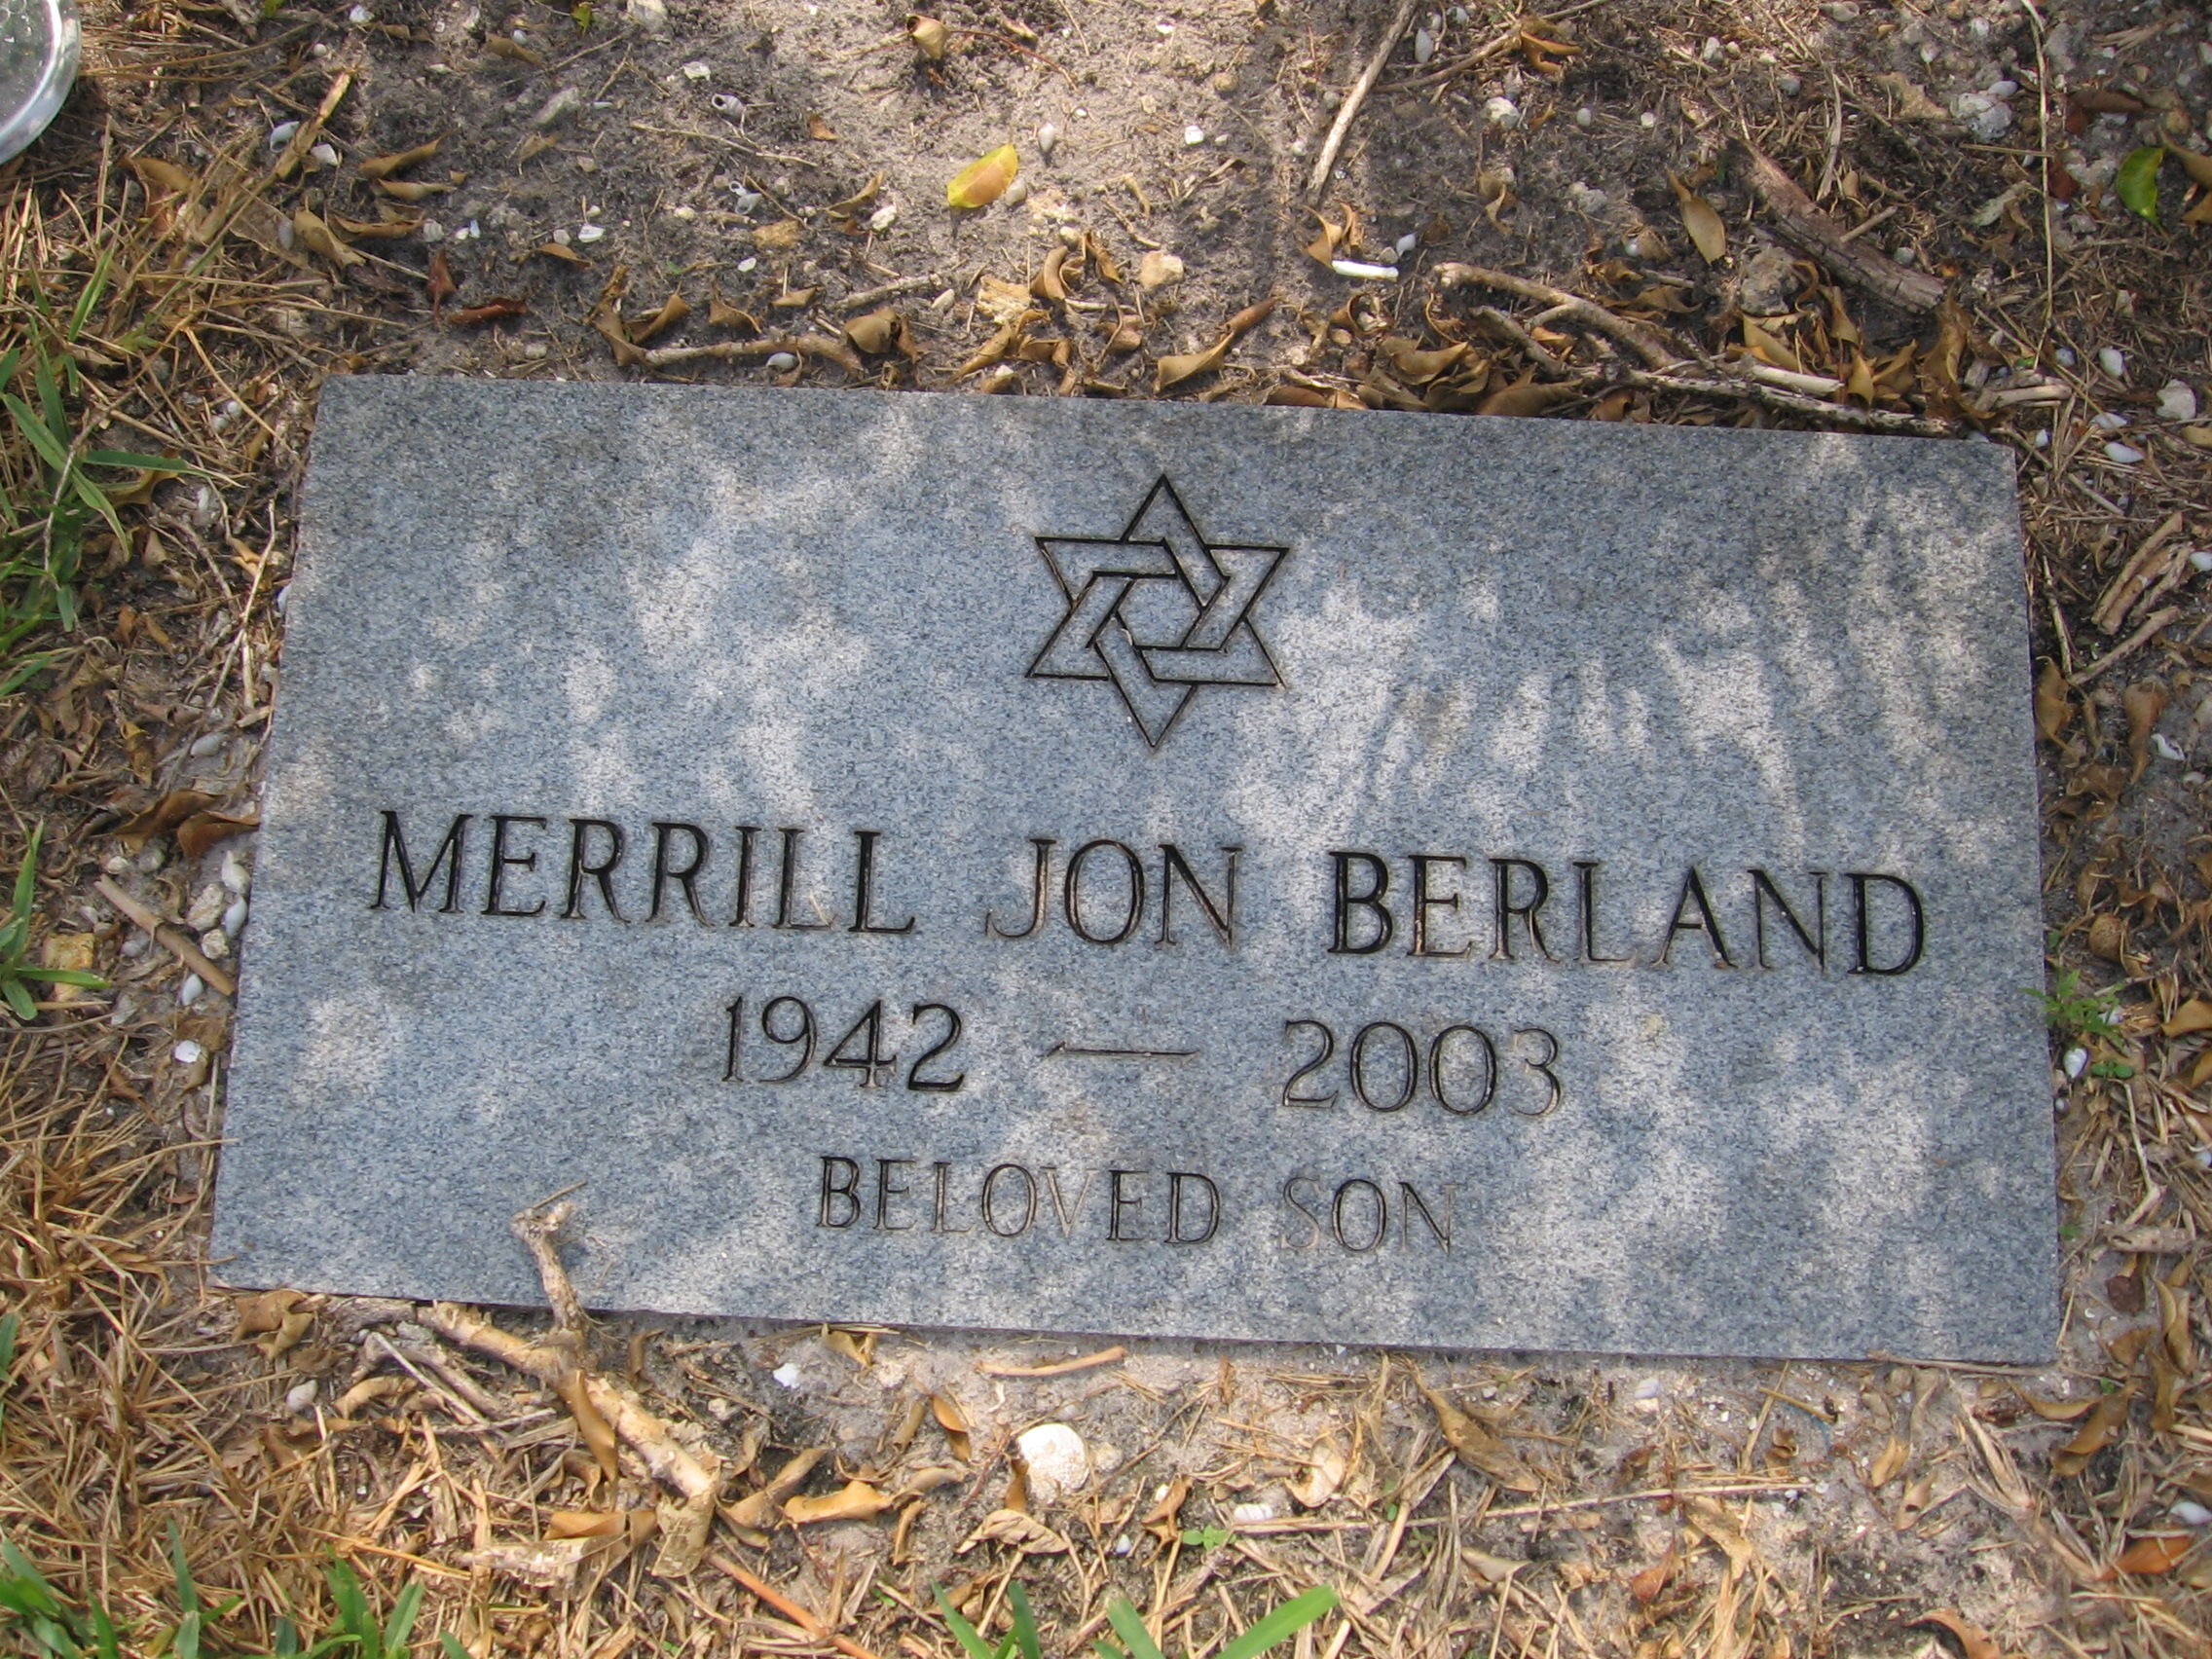 Merrill Jon Berland